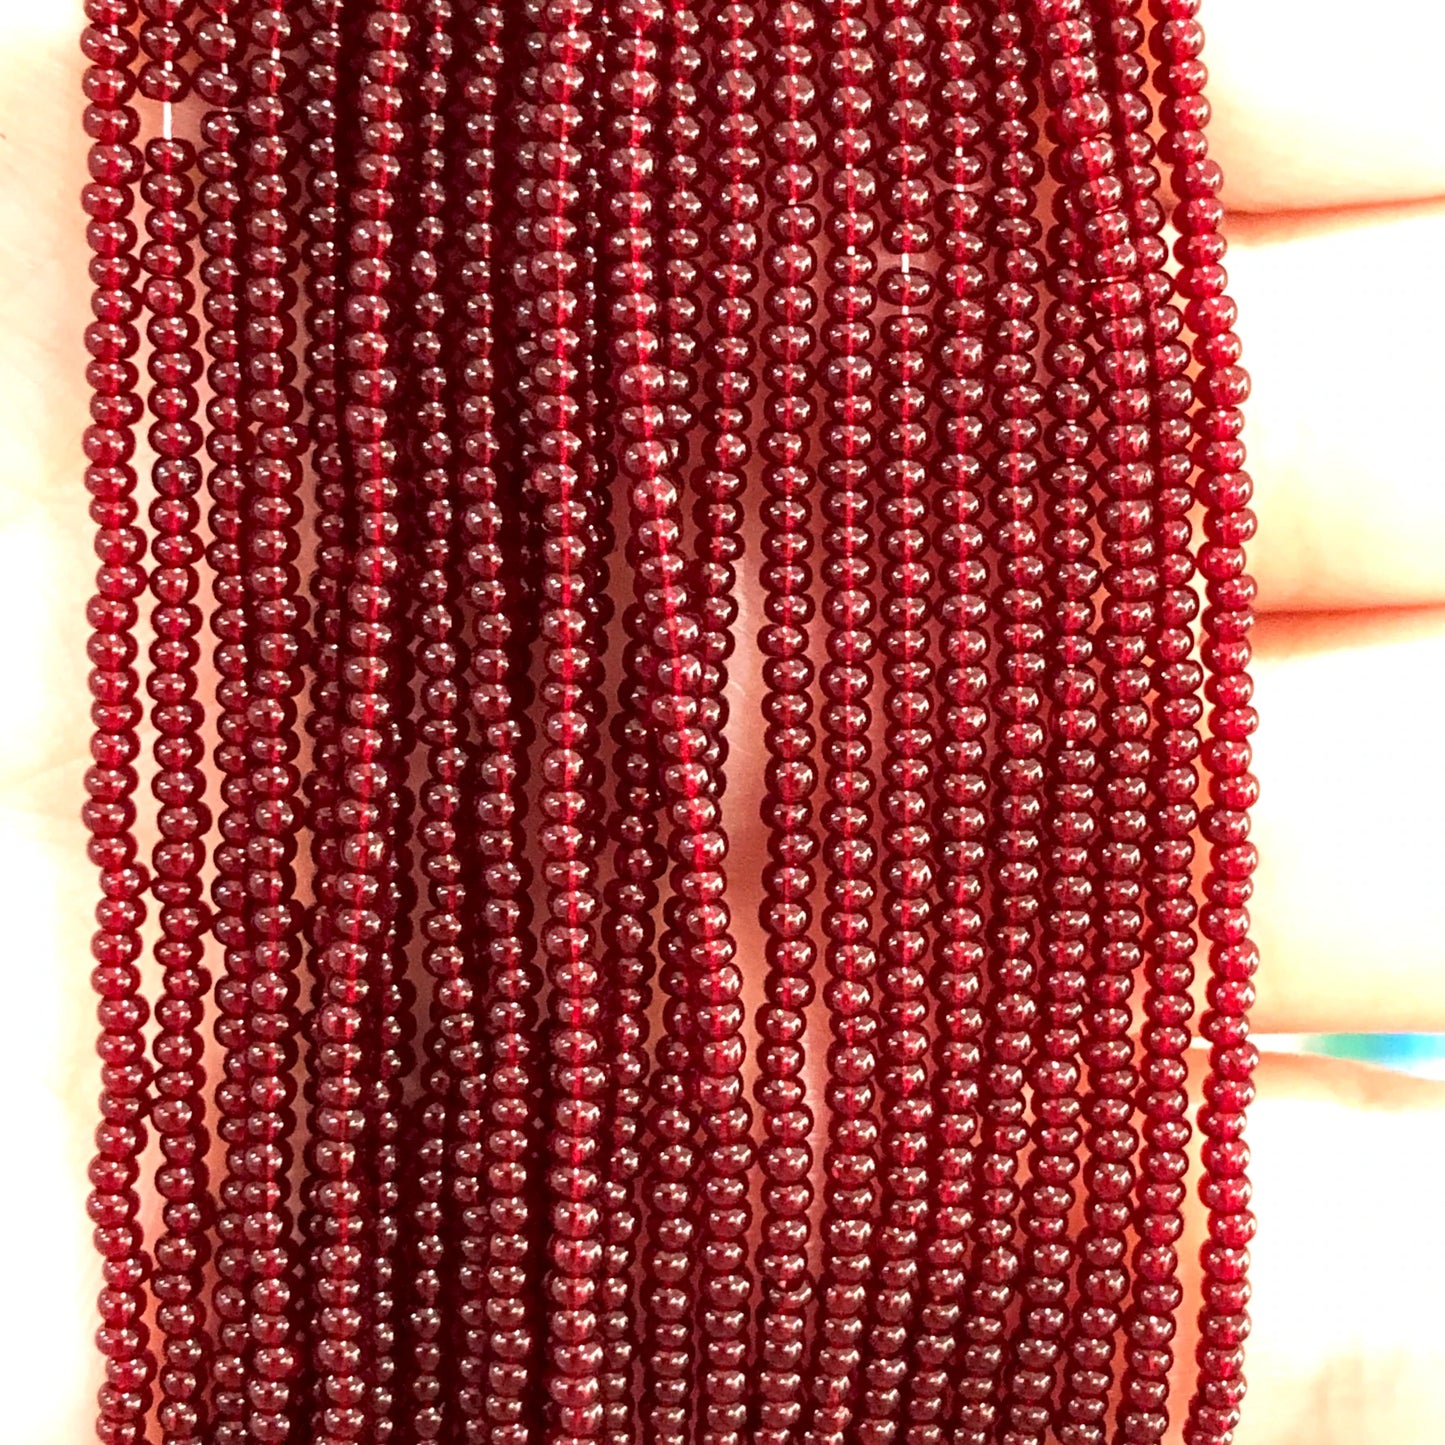 Preciosa Sand Beads 11/0 -90120-Transparent Claret Red 